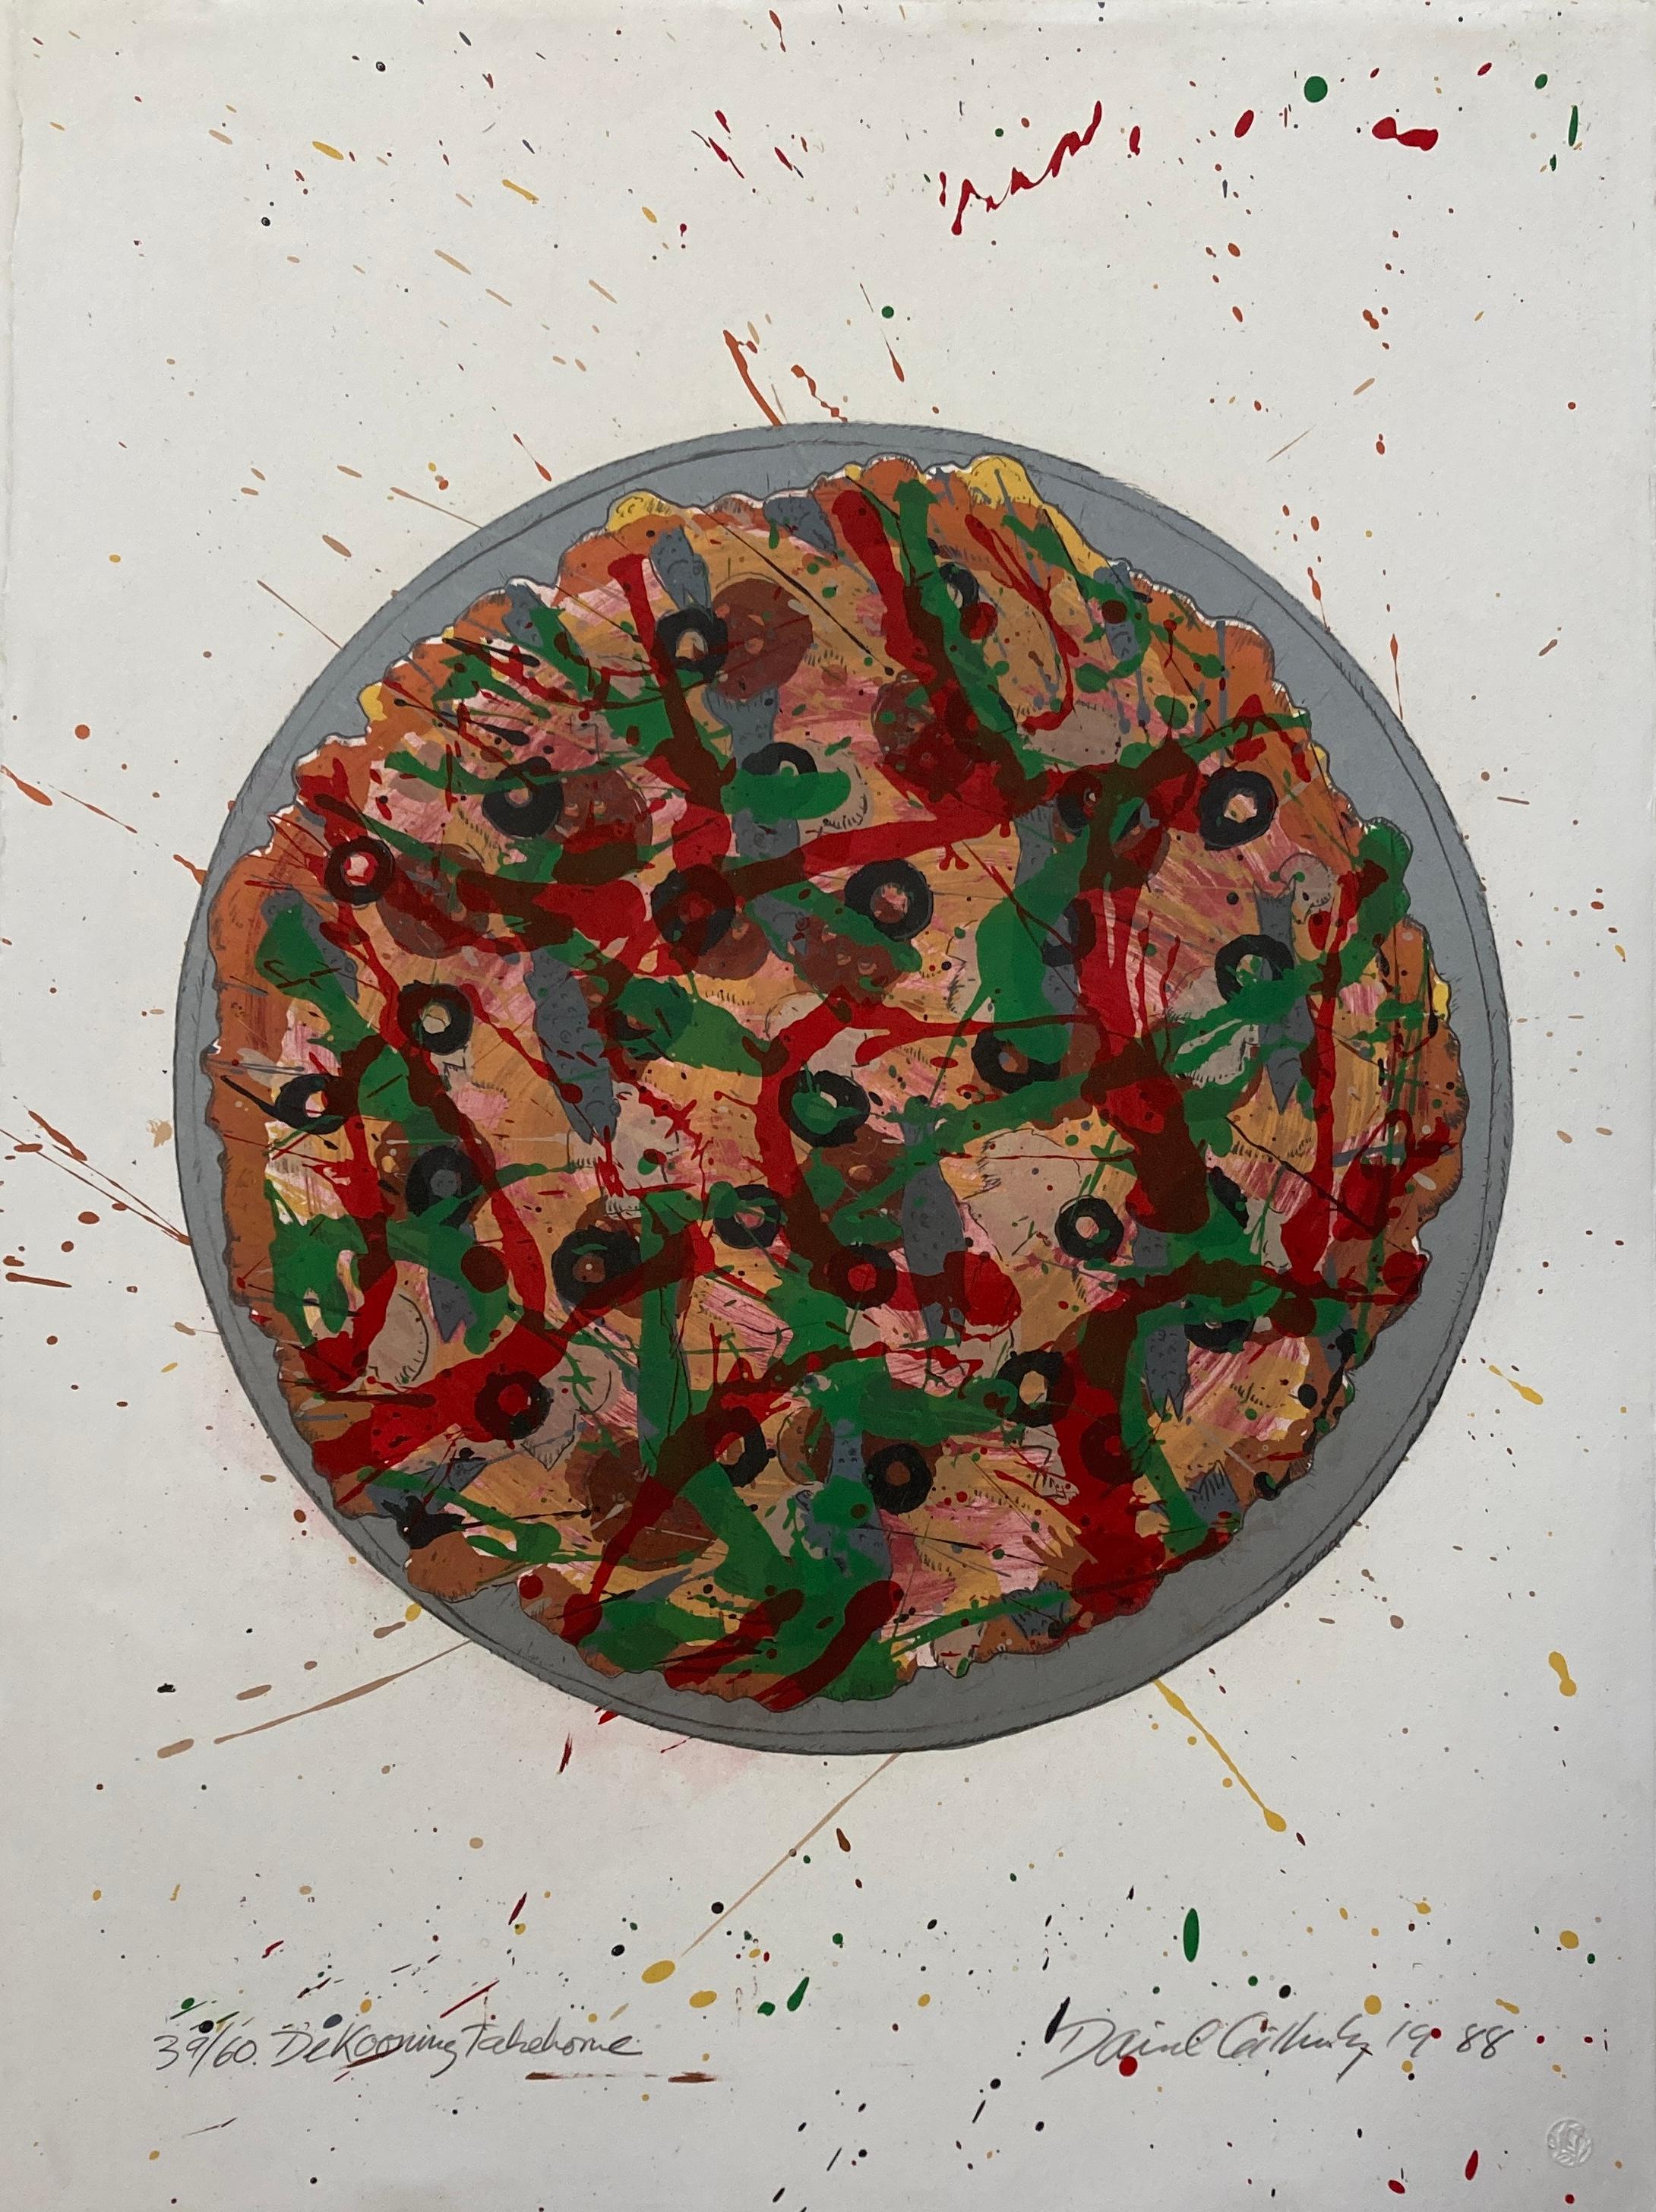 David Gilhooly (1943-2013)
De Kooning Pizza zum Mitnehmen, 1988
10 Farblithografien auf Velinpapier
Ausgabe 39/60
Signiert und datiert unten rechts
Editioniert und betitelt unten links
Herausgegeben von Magnolia Editions, Oakland, CA mit